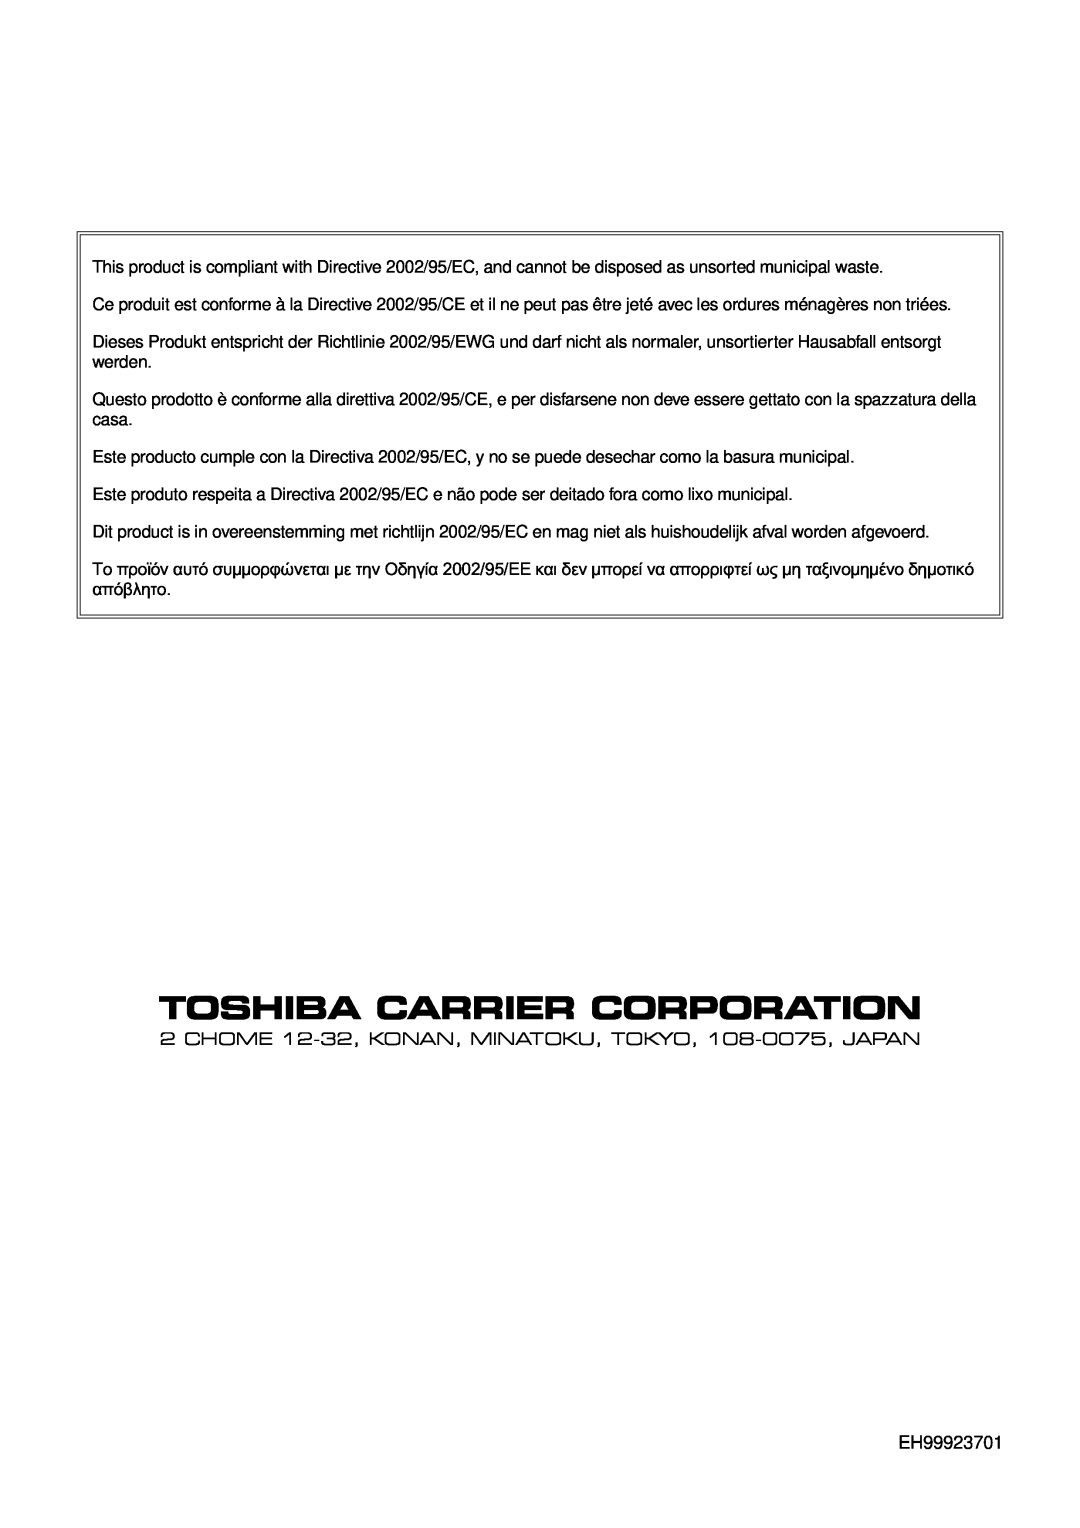 Toshiba RAV-SM1402AT-E, SP562AT-E, SP1102AT-E, SP802AT-E, RAV-SM1102CT-E, SP1402AT-E, RAV-SM802CT-E Toshiba Carrier Corporation 